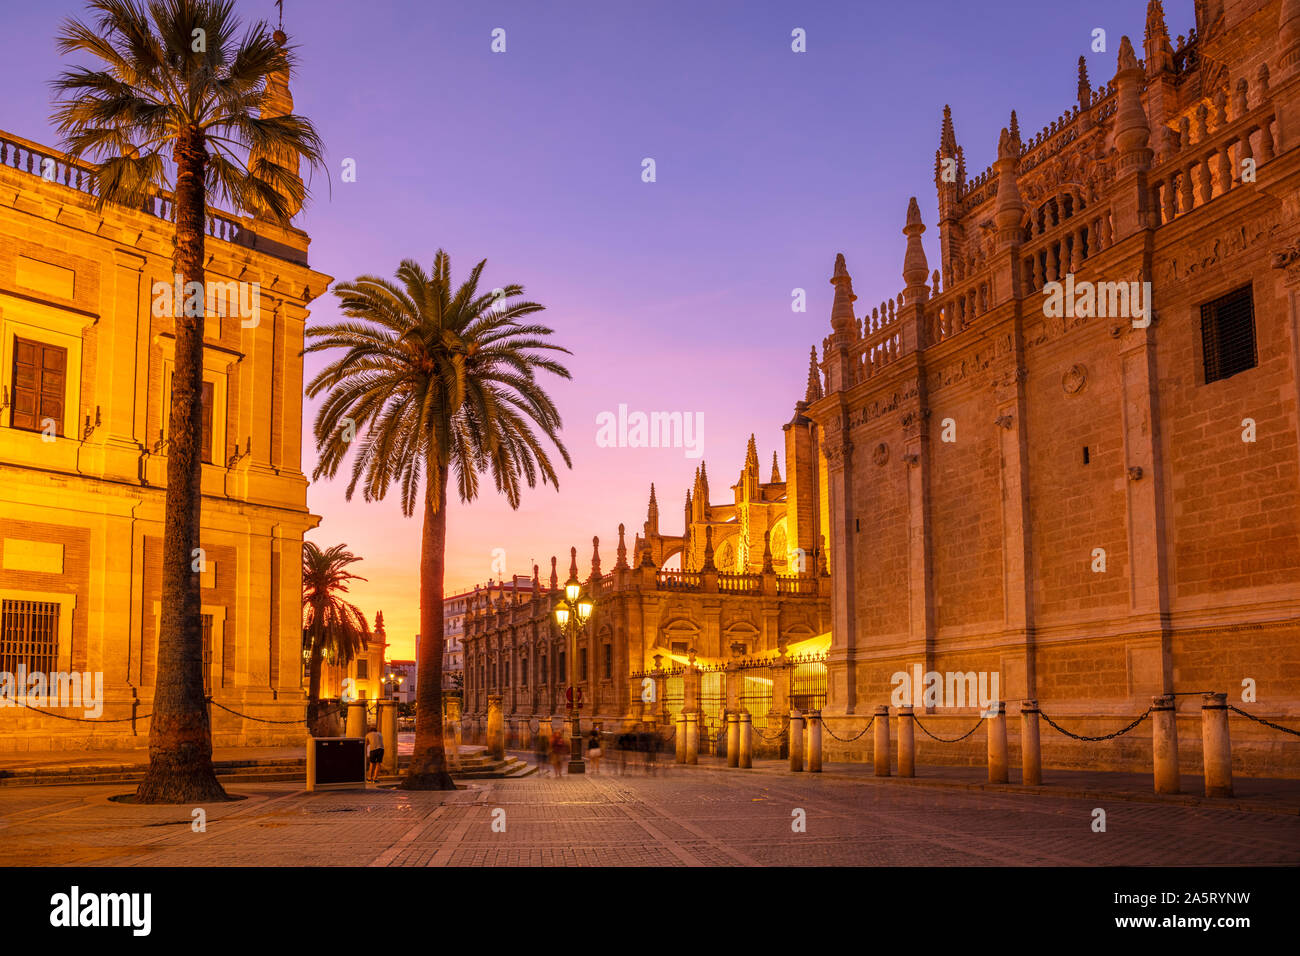 Nachts beleuchteten Kathedrale von Sevilla Sevilla und den Sevilla allgemein Archiv der Indies Gebäude Sonnenuntergang Calle Miguel Mañara Sevilla Spanien EU Europa Stockfoto